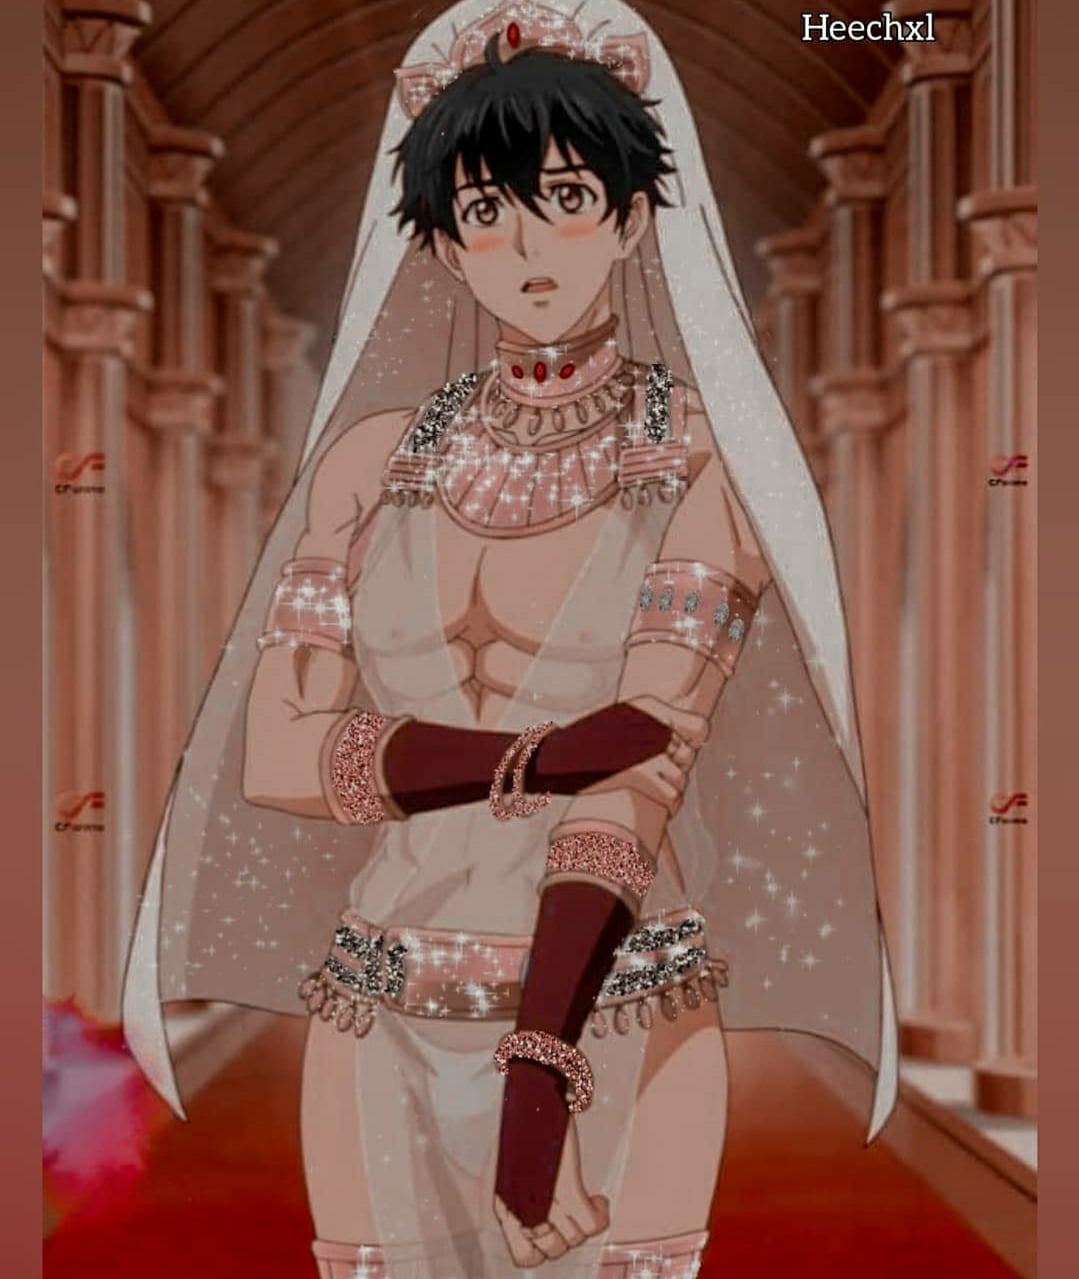 Манга яой невесты. Невеста титана Коичи в платье.